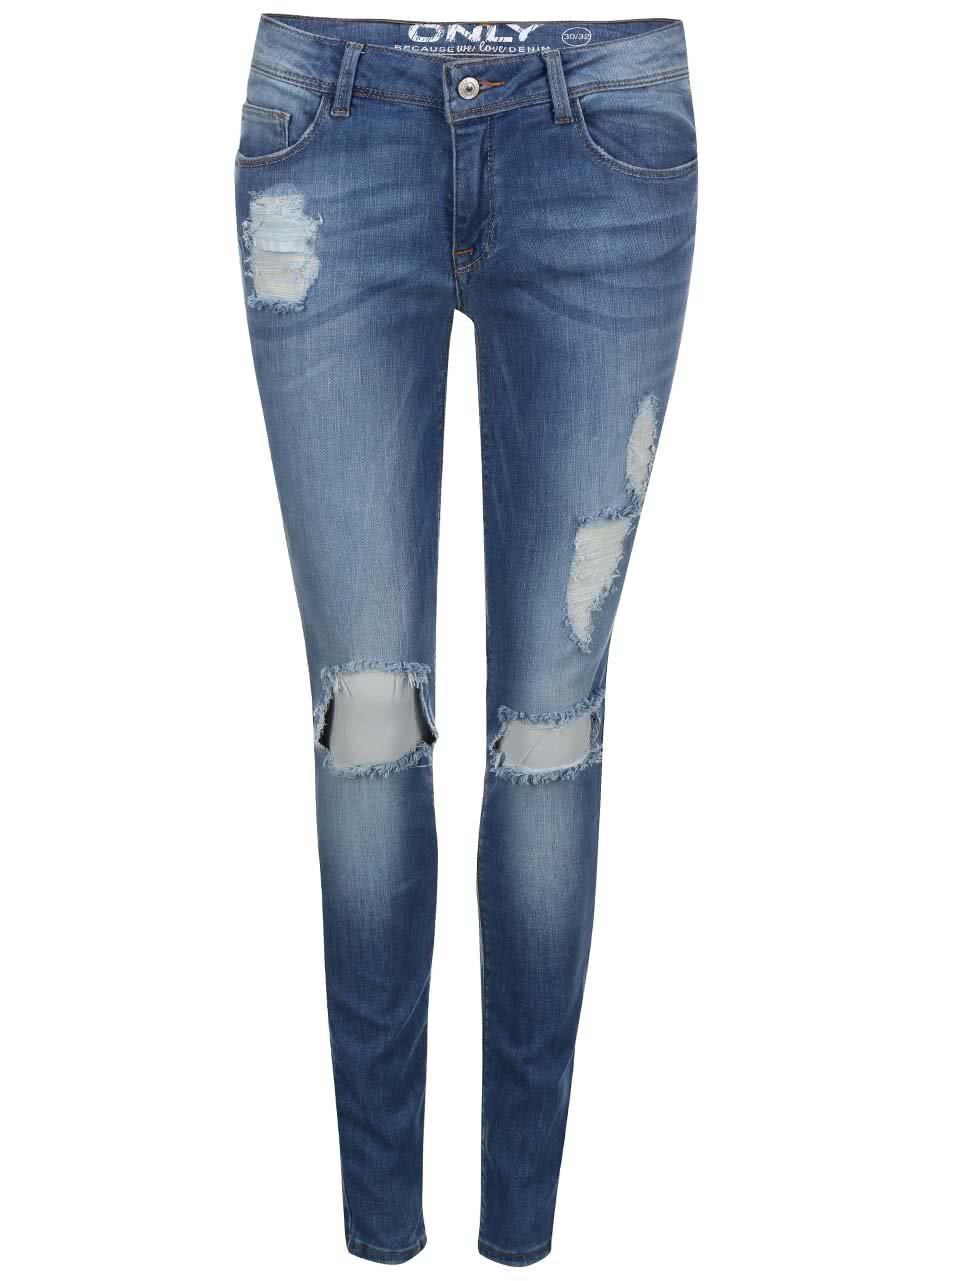 Modré skinny džíny s potrhaným efektem ONLY Coral Low